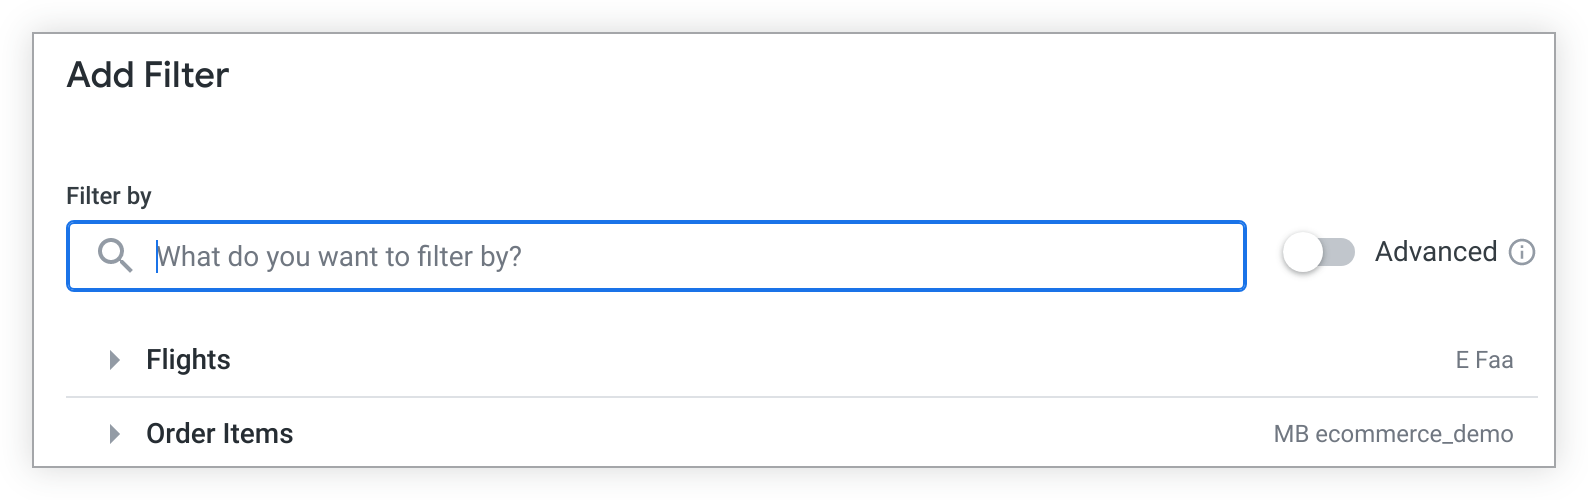 “添加过滤条件”窗口中预先填充的探索将显示在“按过滤条件过滤”栏下方。